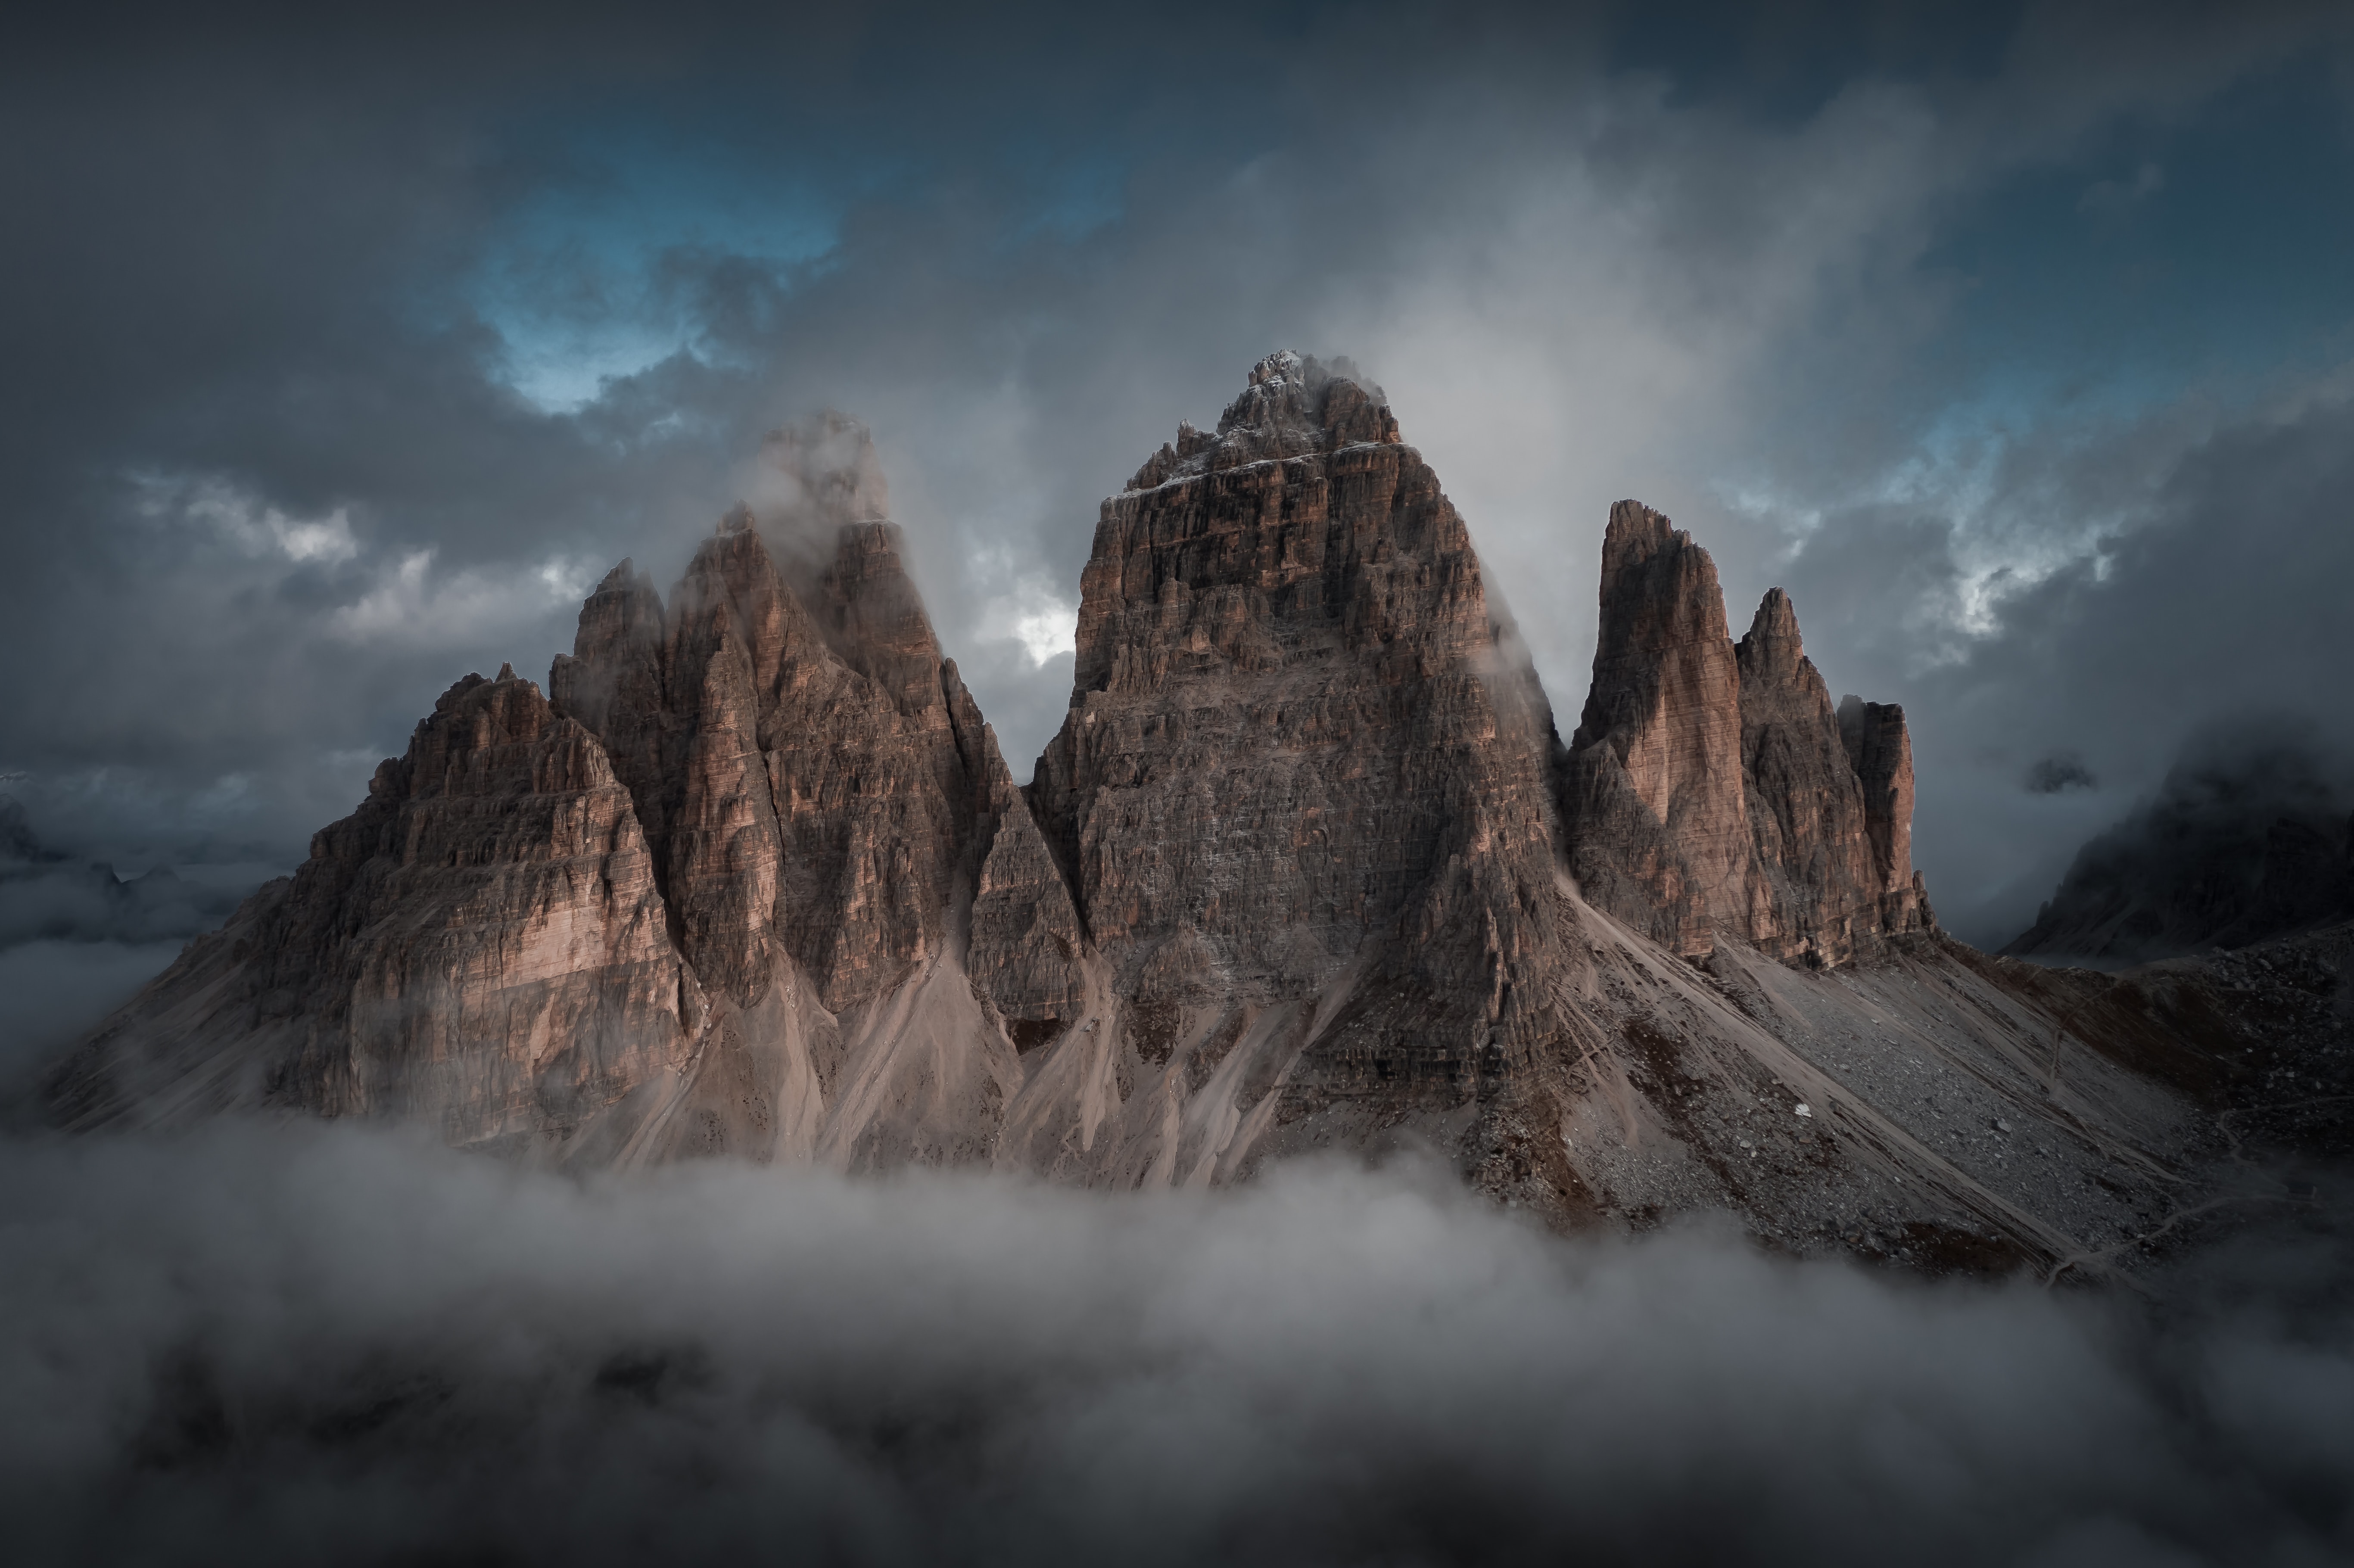 Foto do Tre Cime di Lavaredo, que é uma montanha com 3 picos, estava amanhecendo, porém ainda escuro e com névoa na parte inferior.